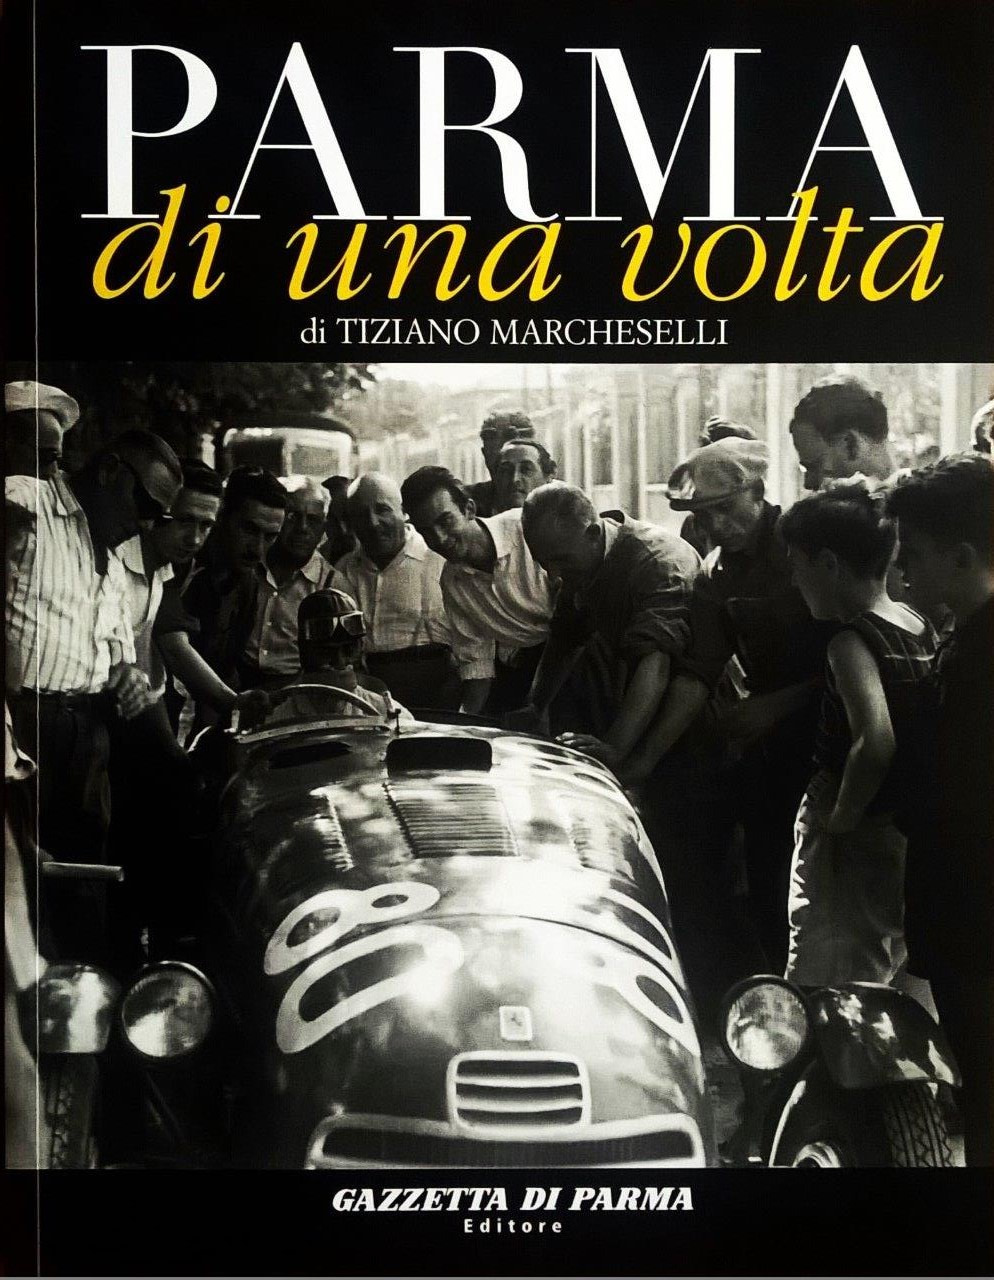 Tiziano Marcheselli, Parma di una volta - volume quinto, Parma, Gazzetta di Parma Editore (Grafiche Step Editrice), 2006